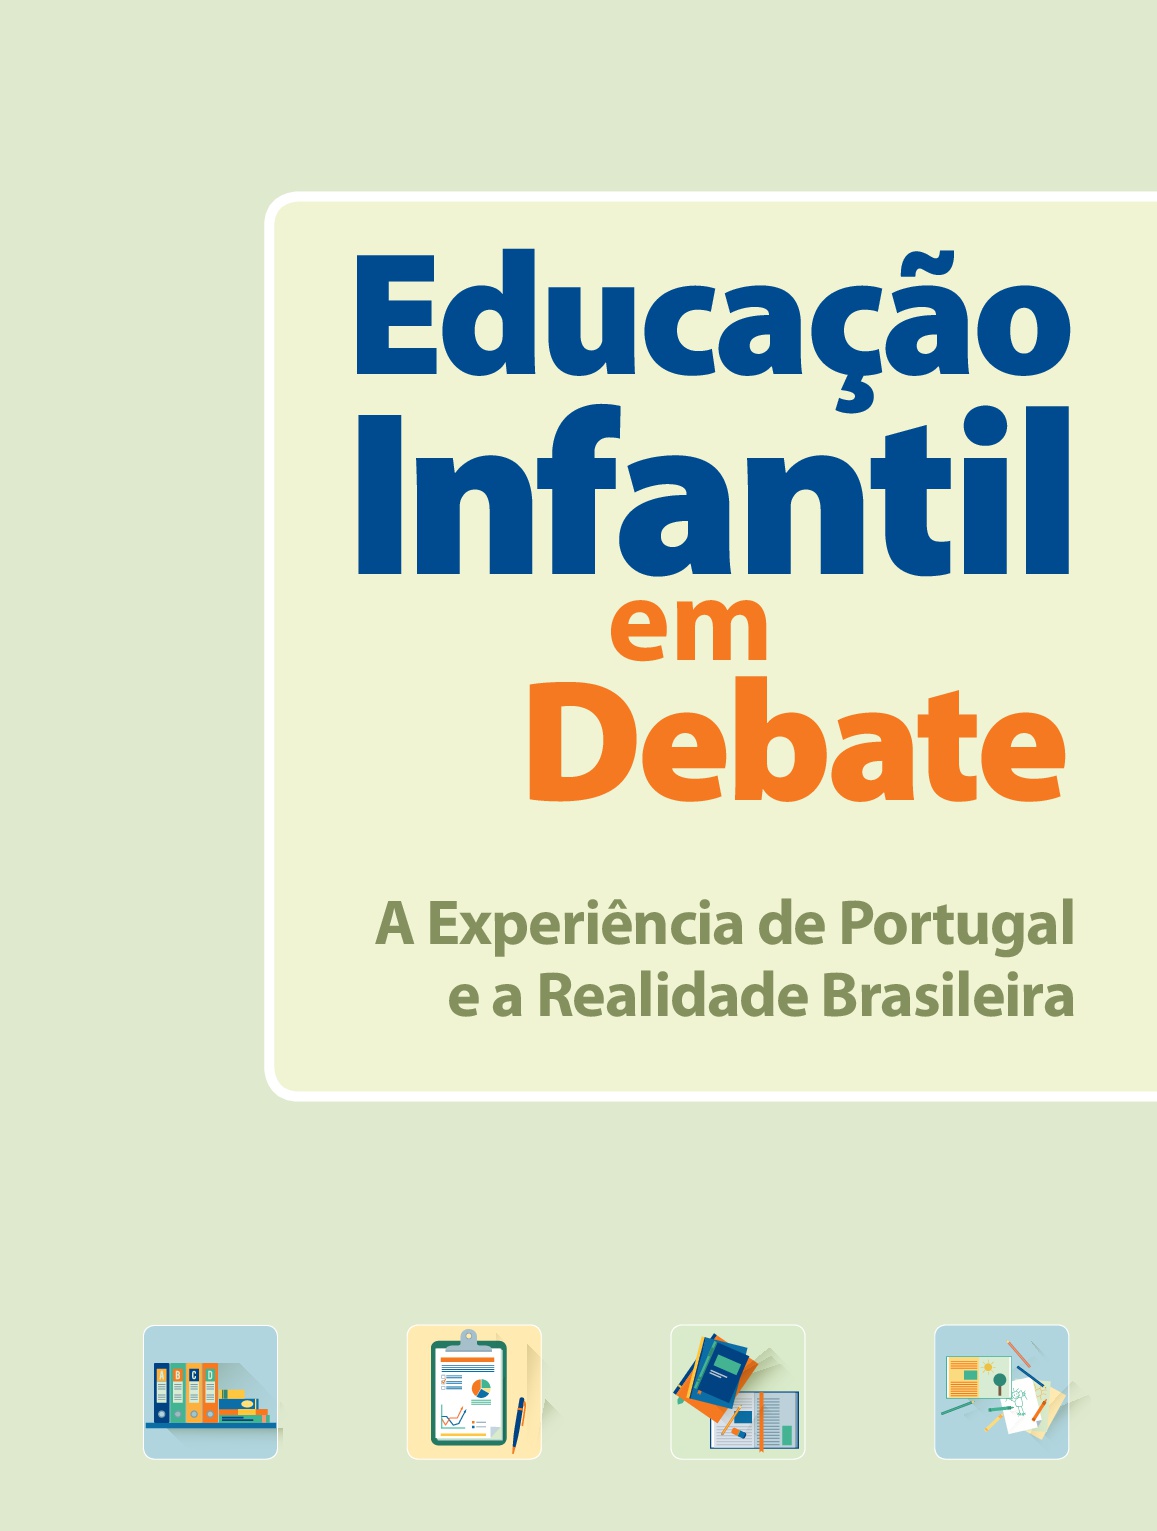 Educação infantil em debate: A expêriencia de Portugal e a realidade brasileira